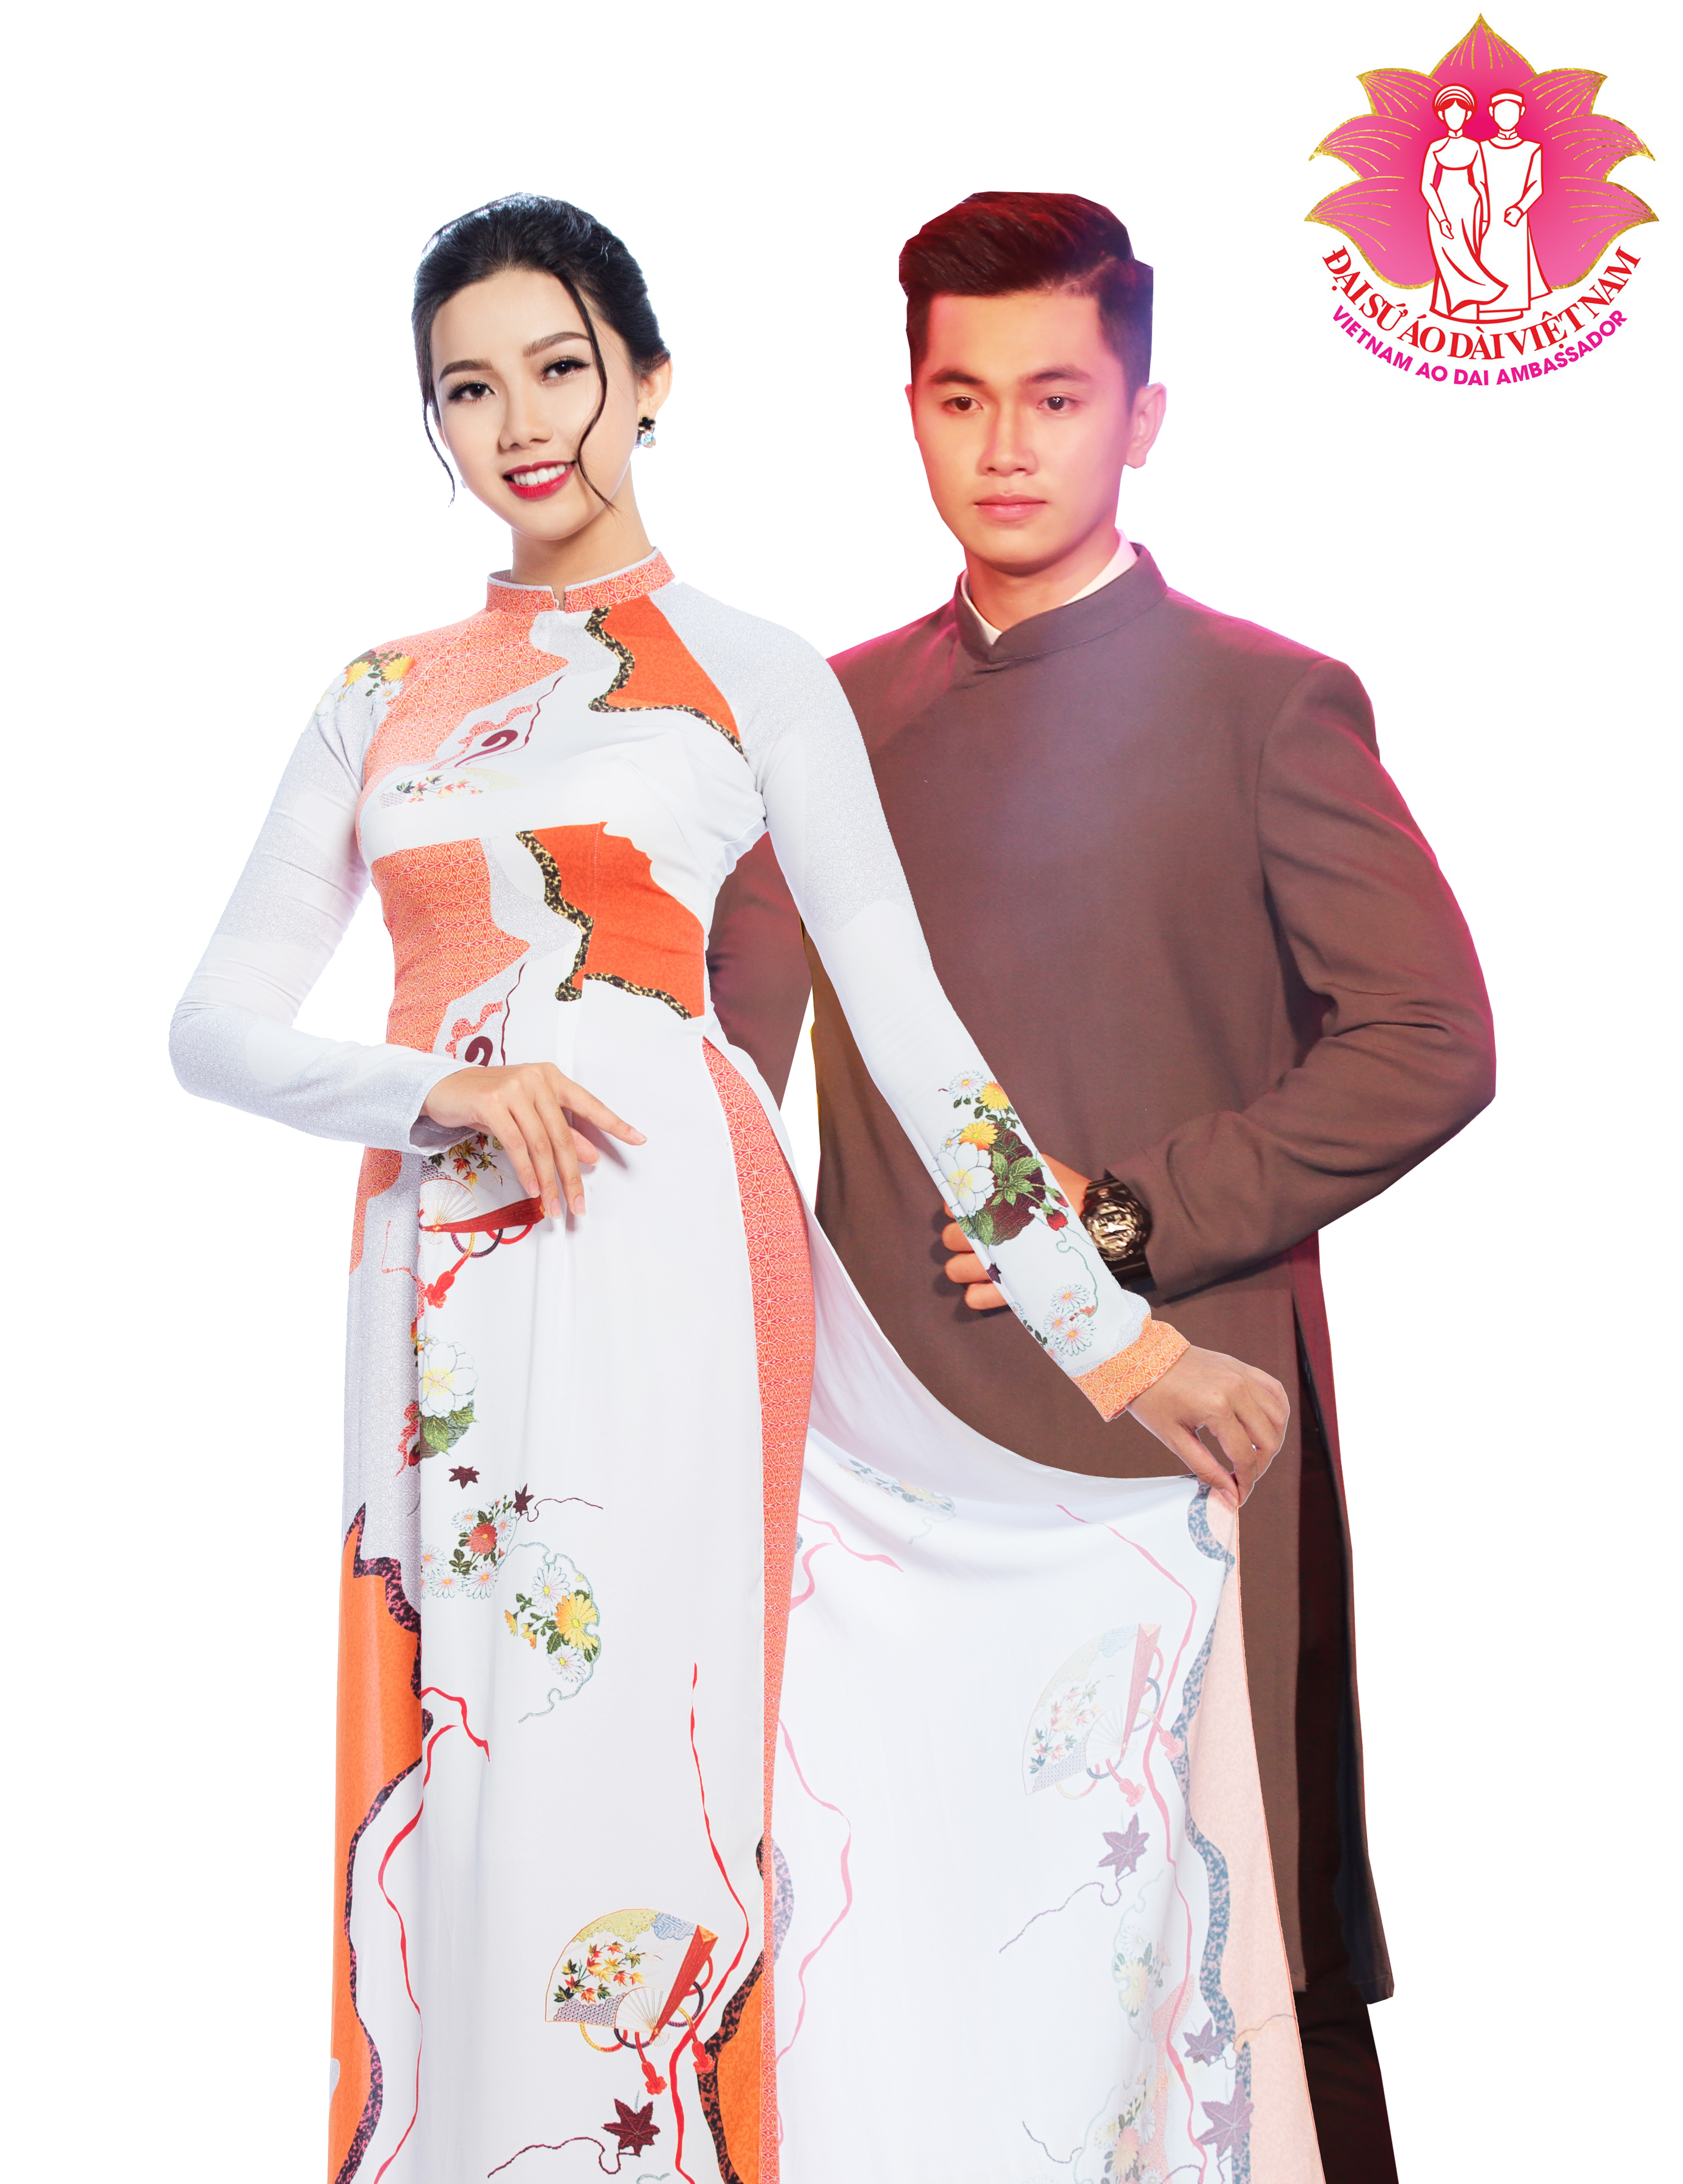 Họp báo "Người mẫu - Đại sứ Áo dài Việt Nam 2019" - Đại sứ áo dài HUTECH vinh dự góp mặt 9